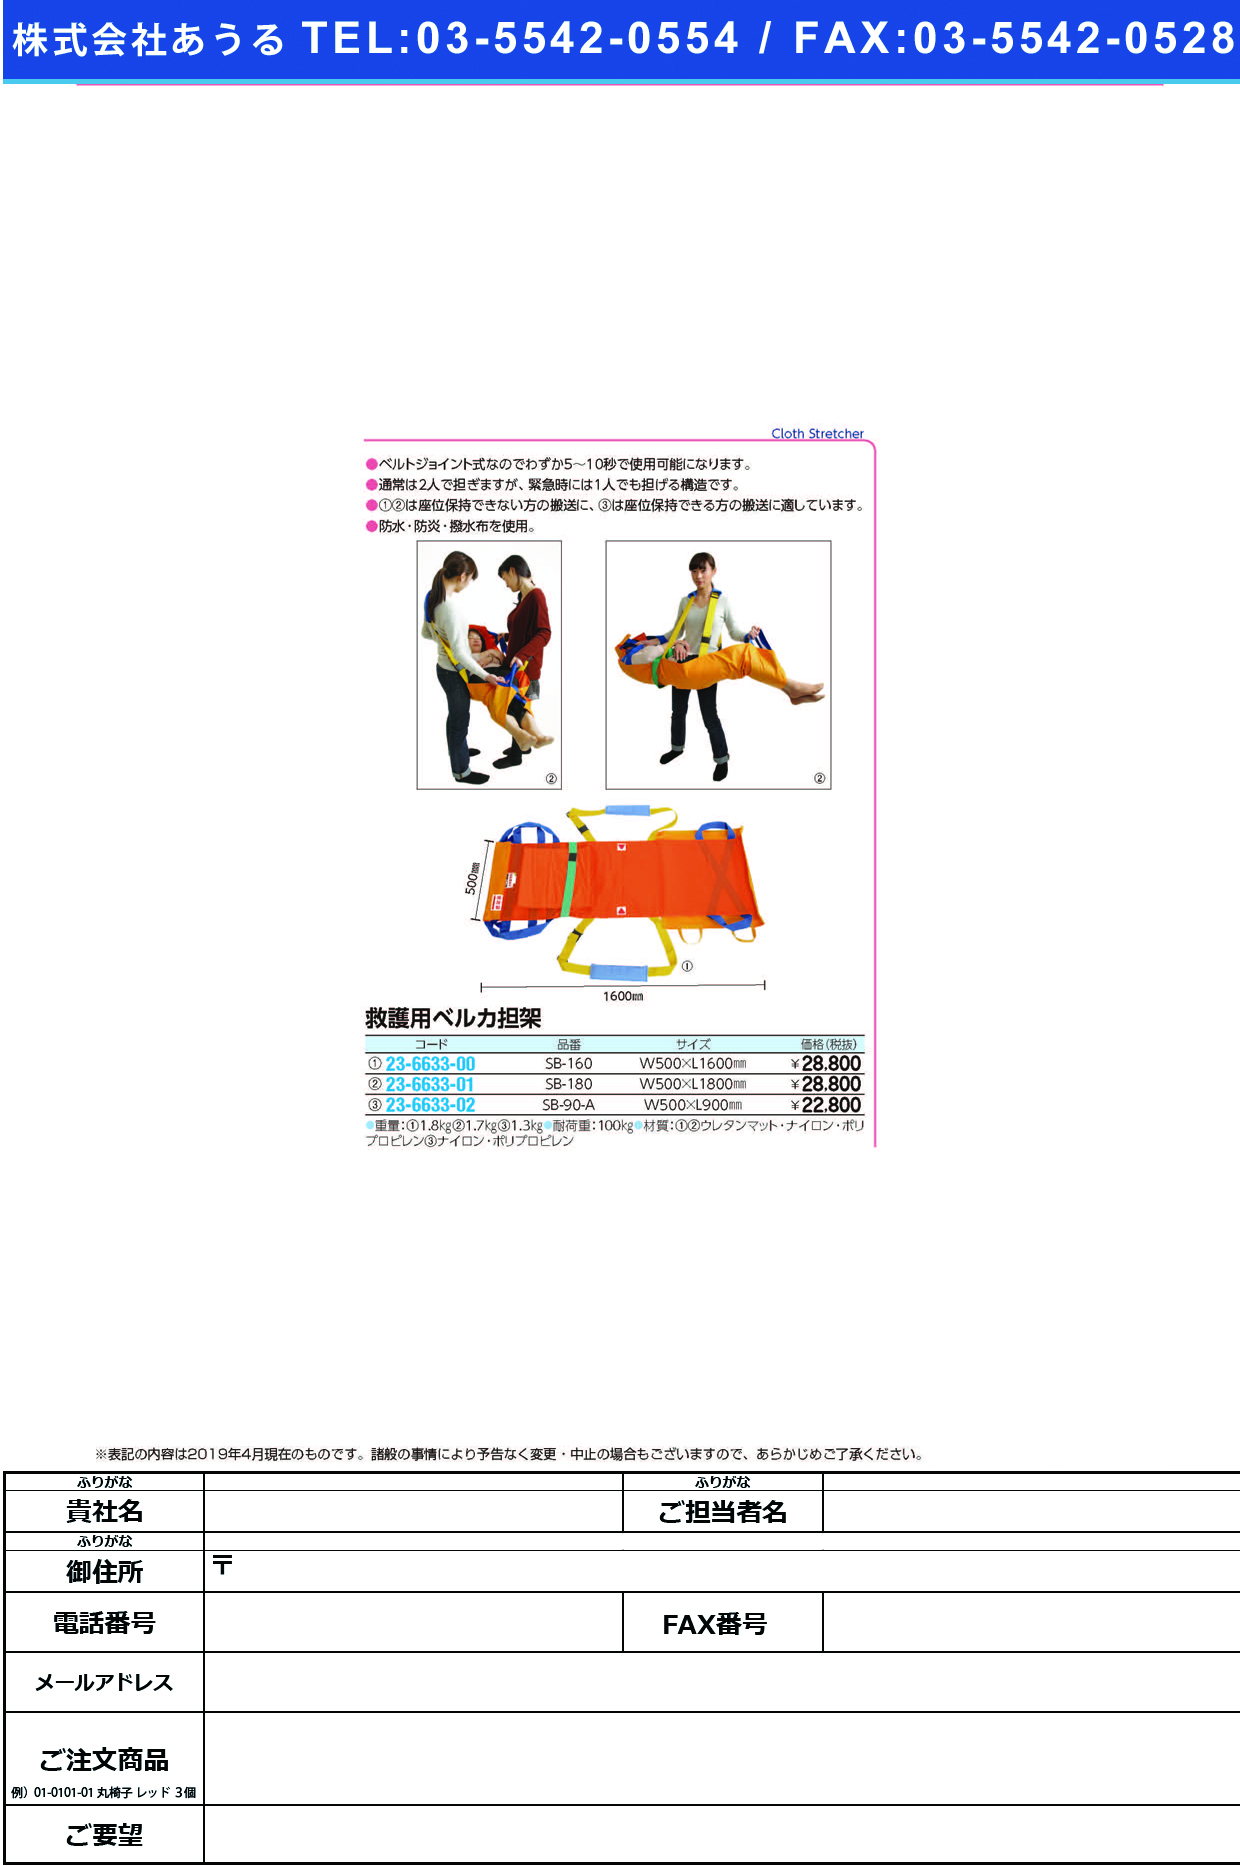 (23-6633-01)ベルカワンタッチ式救護担架 SB-180 ﾍﾞﾙｶﾜﾝﾀｯﾁｼｷｷｭｳｺﾞﾀﾝｶ【1枚単位】【2019年カタログ商品】